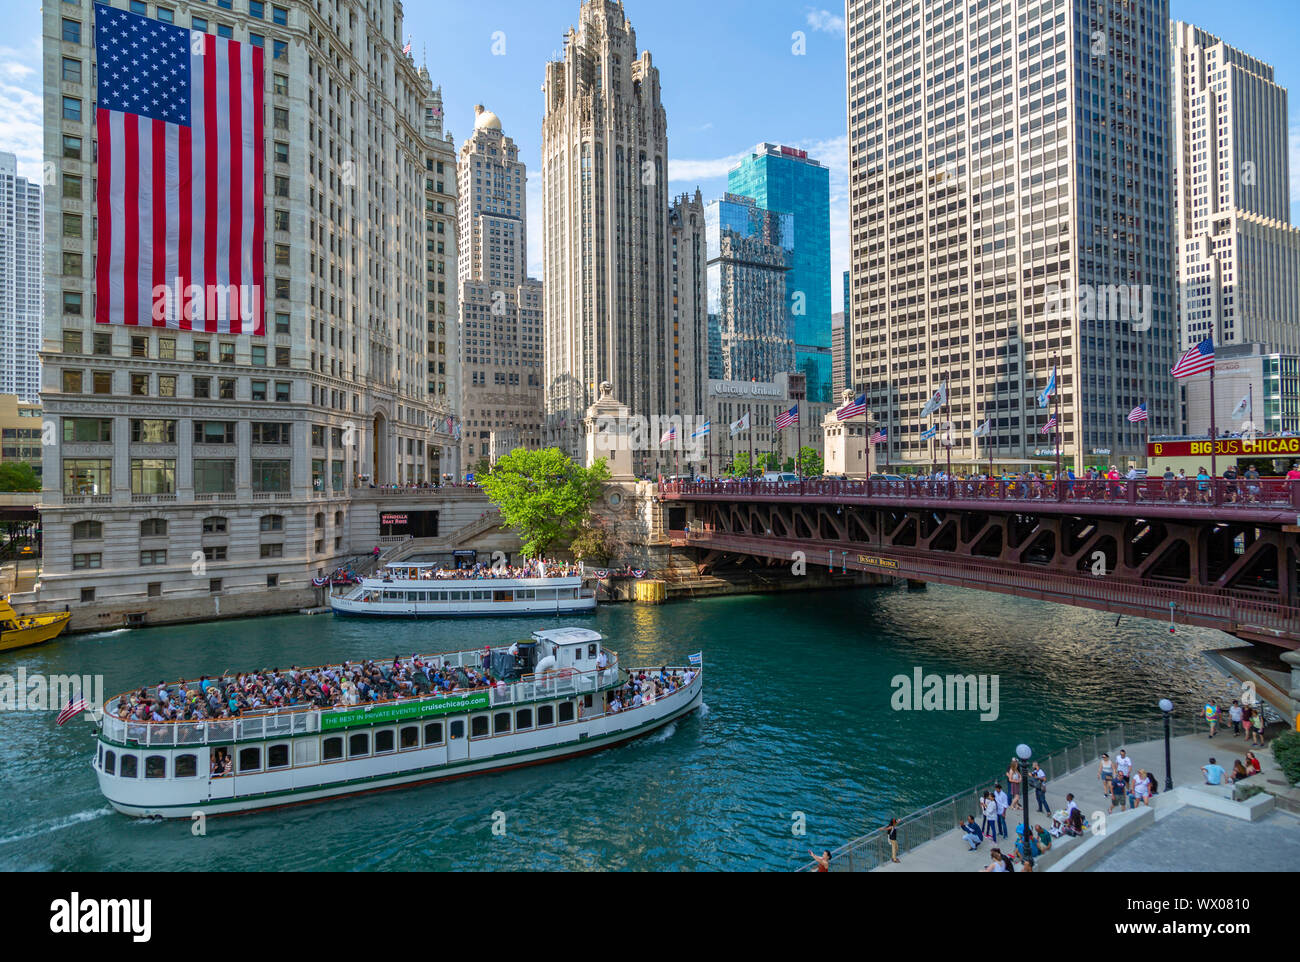 Vue du drapeau américain sur le Wrigley Building et la rivière Chicago, Chicago, Illinois, États-Unis d'Amérique, Amérique du Nord Banque D'Images